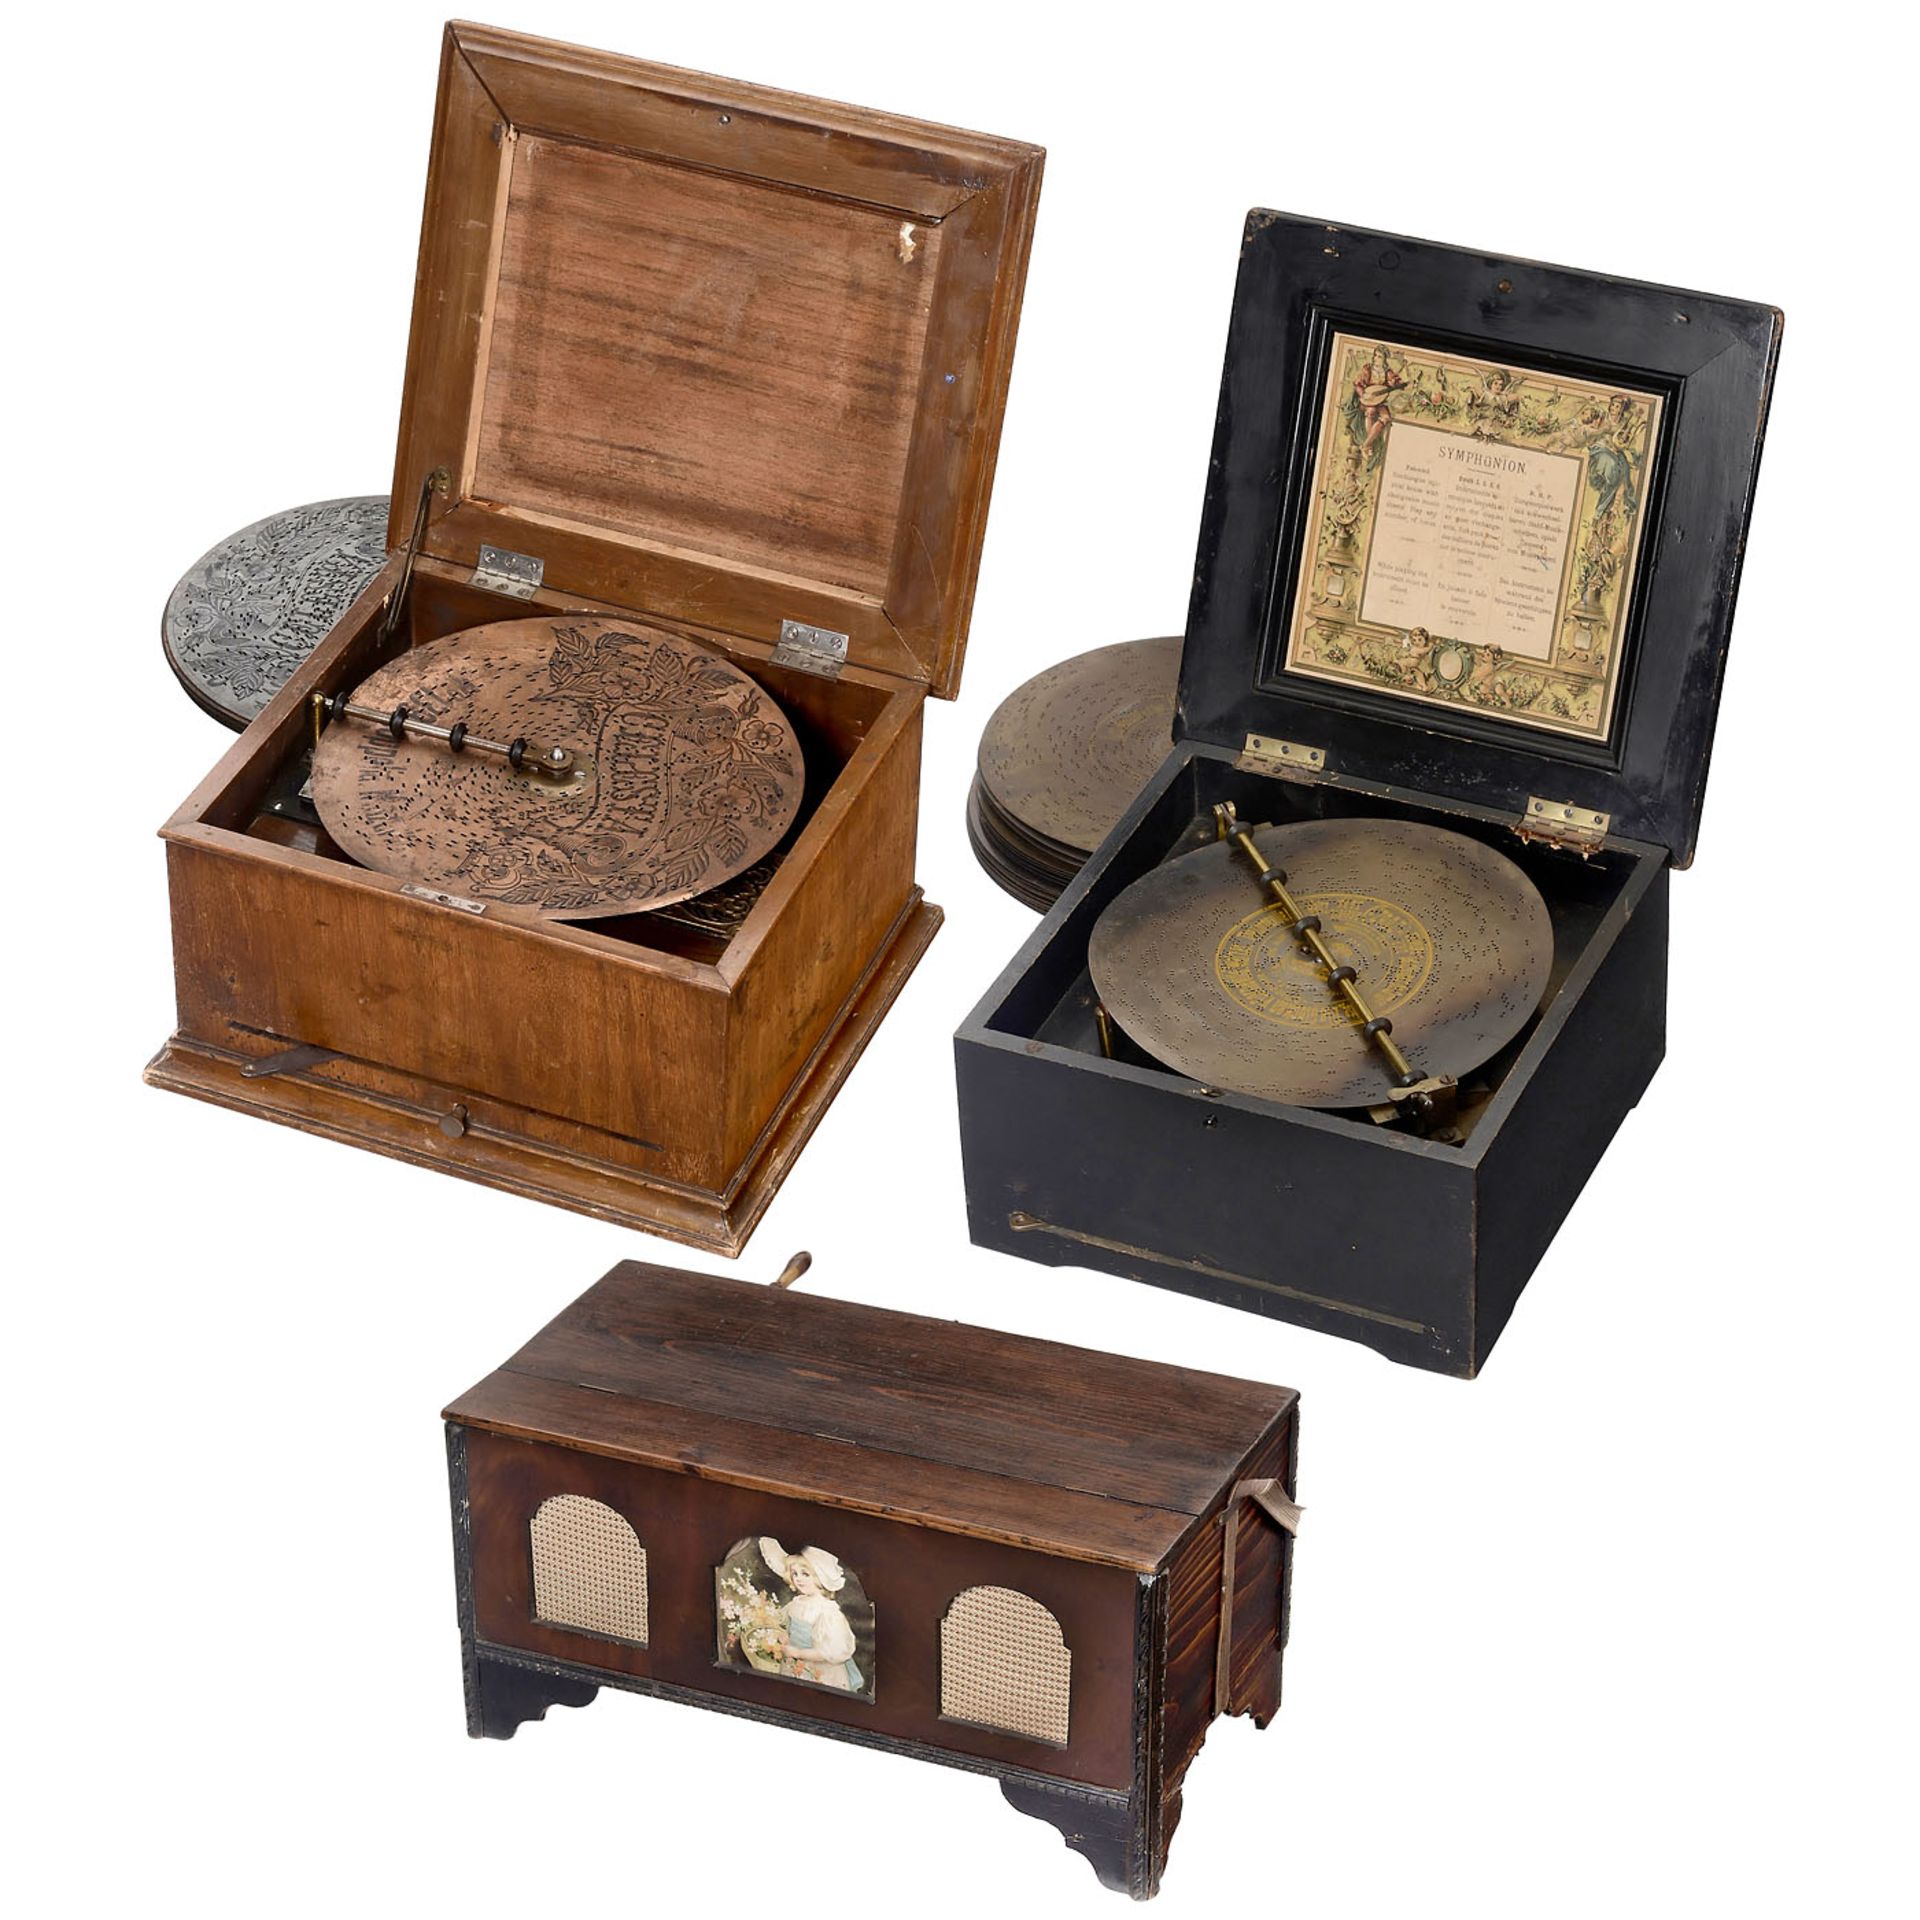 3 Disc Musical Box, c. 1900